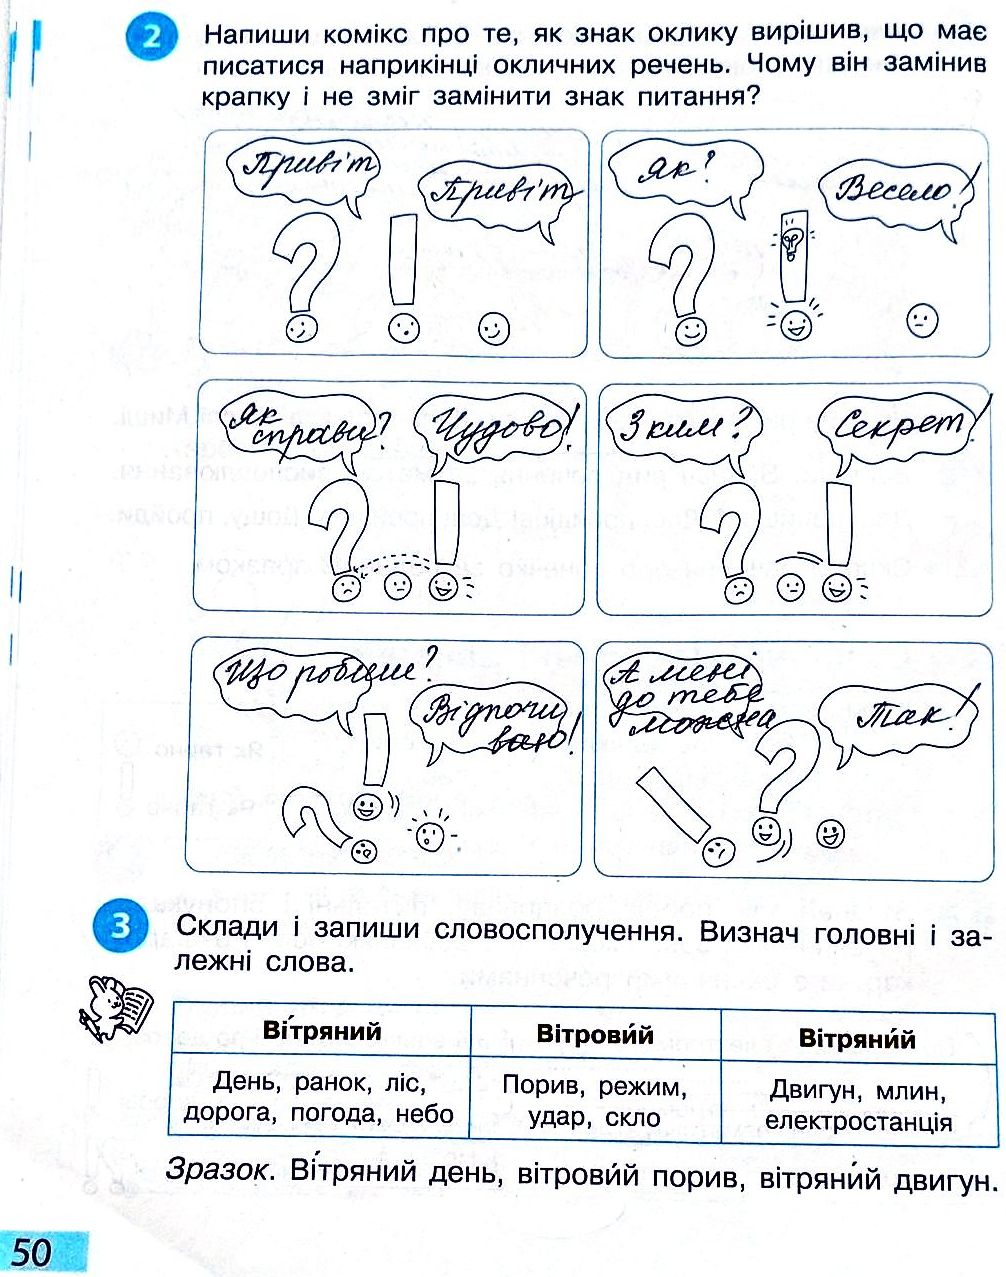 Сторінка 50 частина 2 гдз 3 клас робочий зошит українська мова Большакова